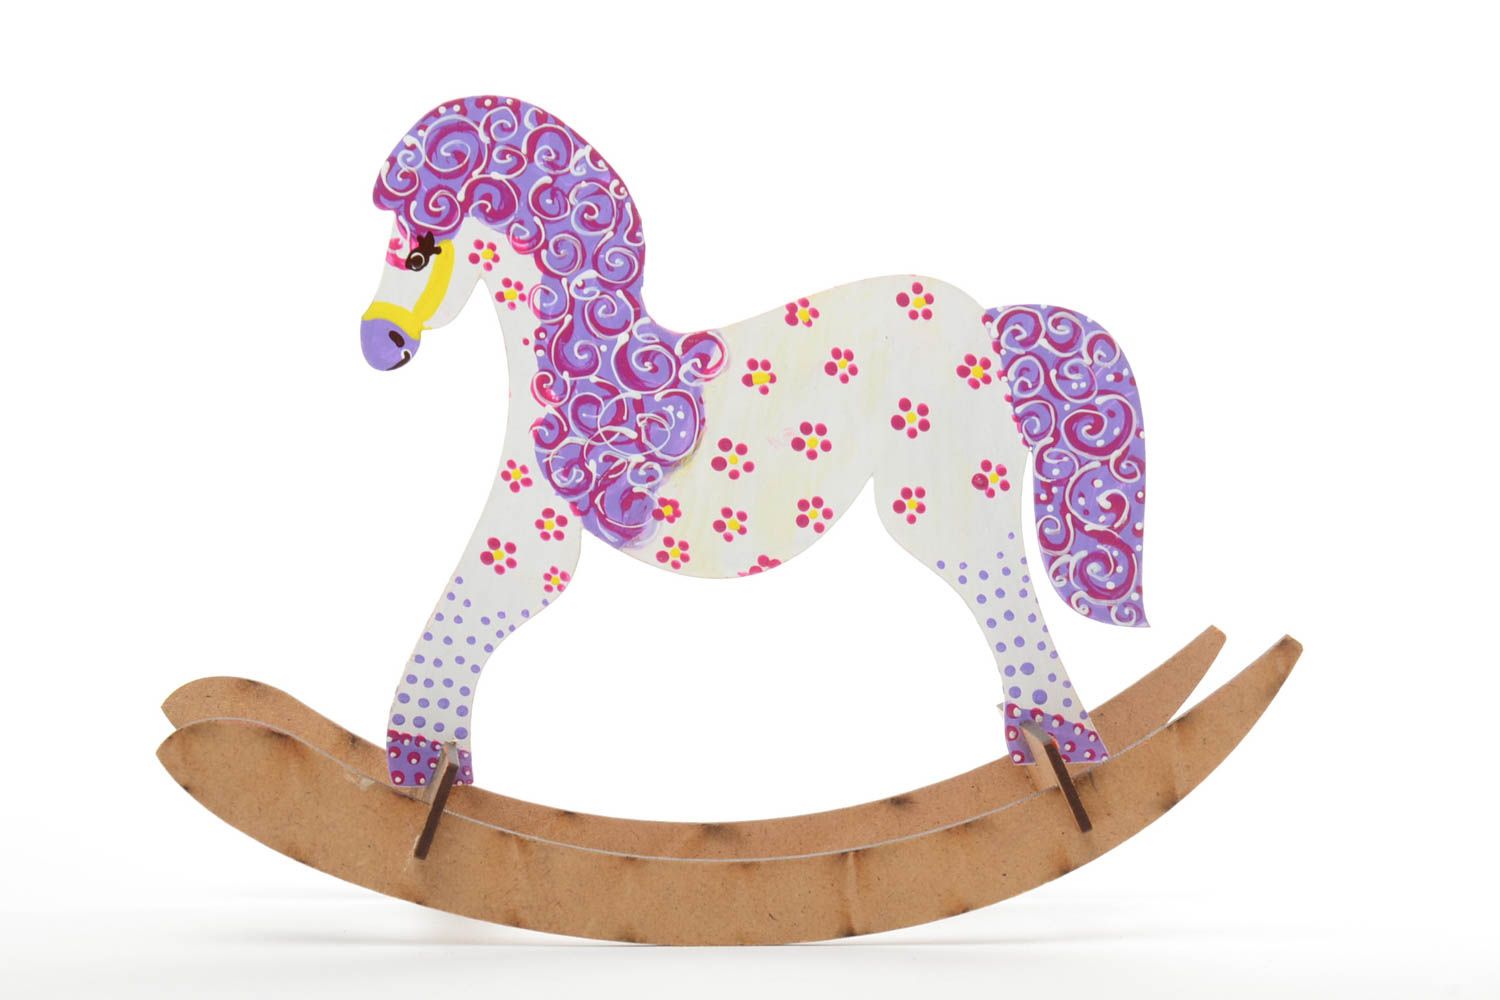 Spielzeug Pferd Schaukel aus Holz mit Acrylfarben bemalt gepunktet handmade foto 2